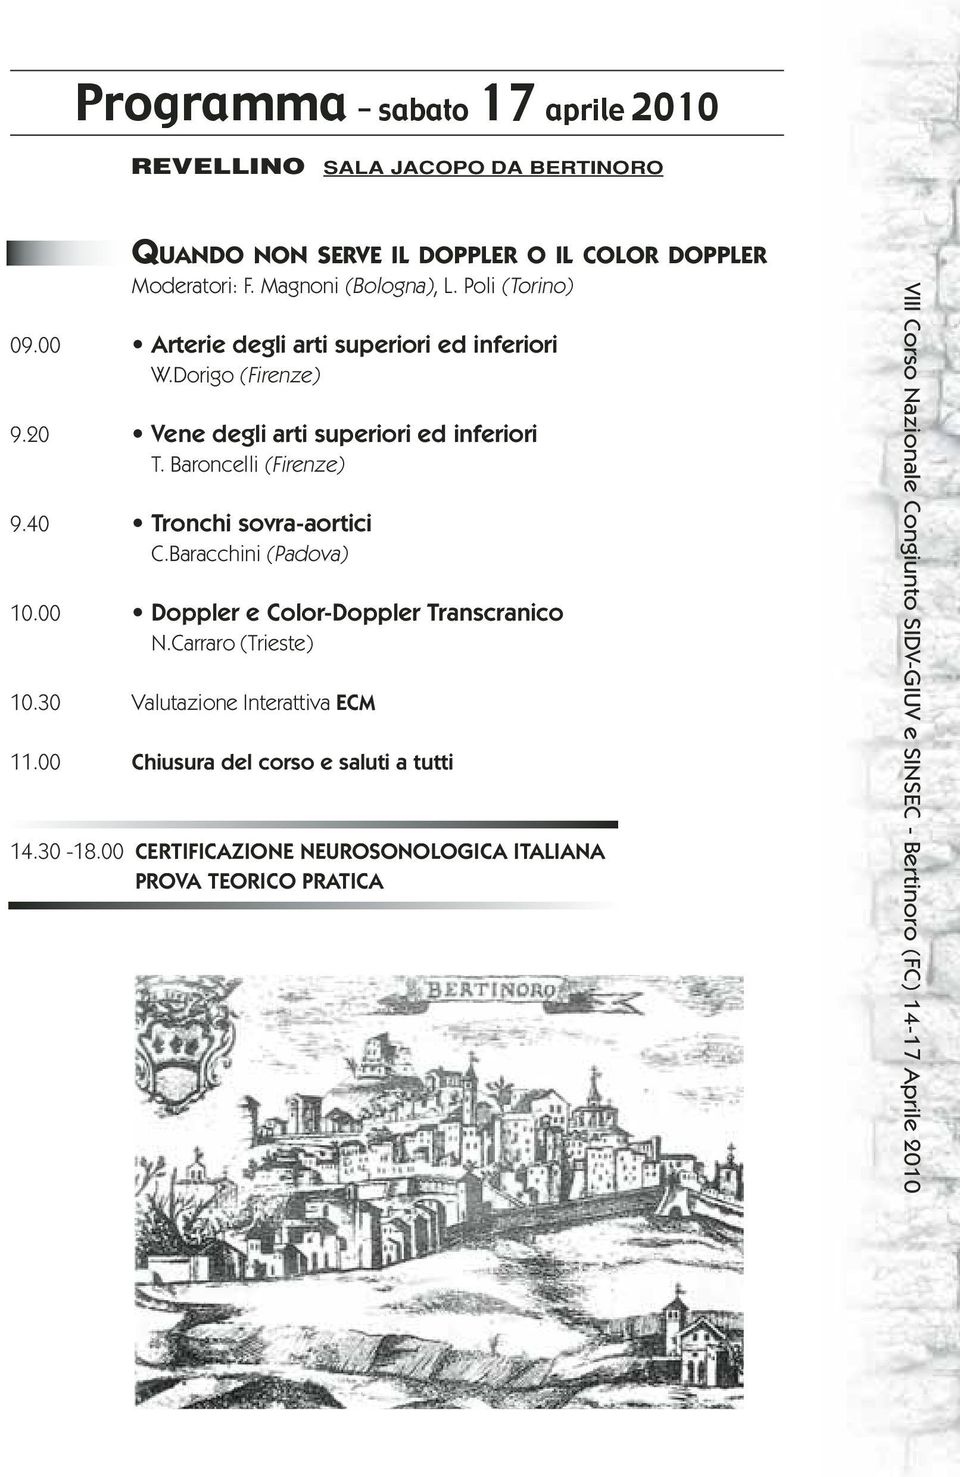 20 Vene degli arti superiori ed inferiori T. Baroncelli (Firenze) 9.40 Tronchi sovra-aortici C.Baracchini (Padova) 10.